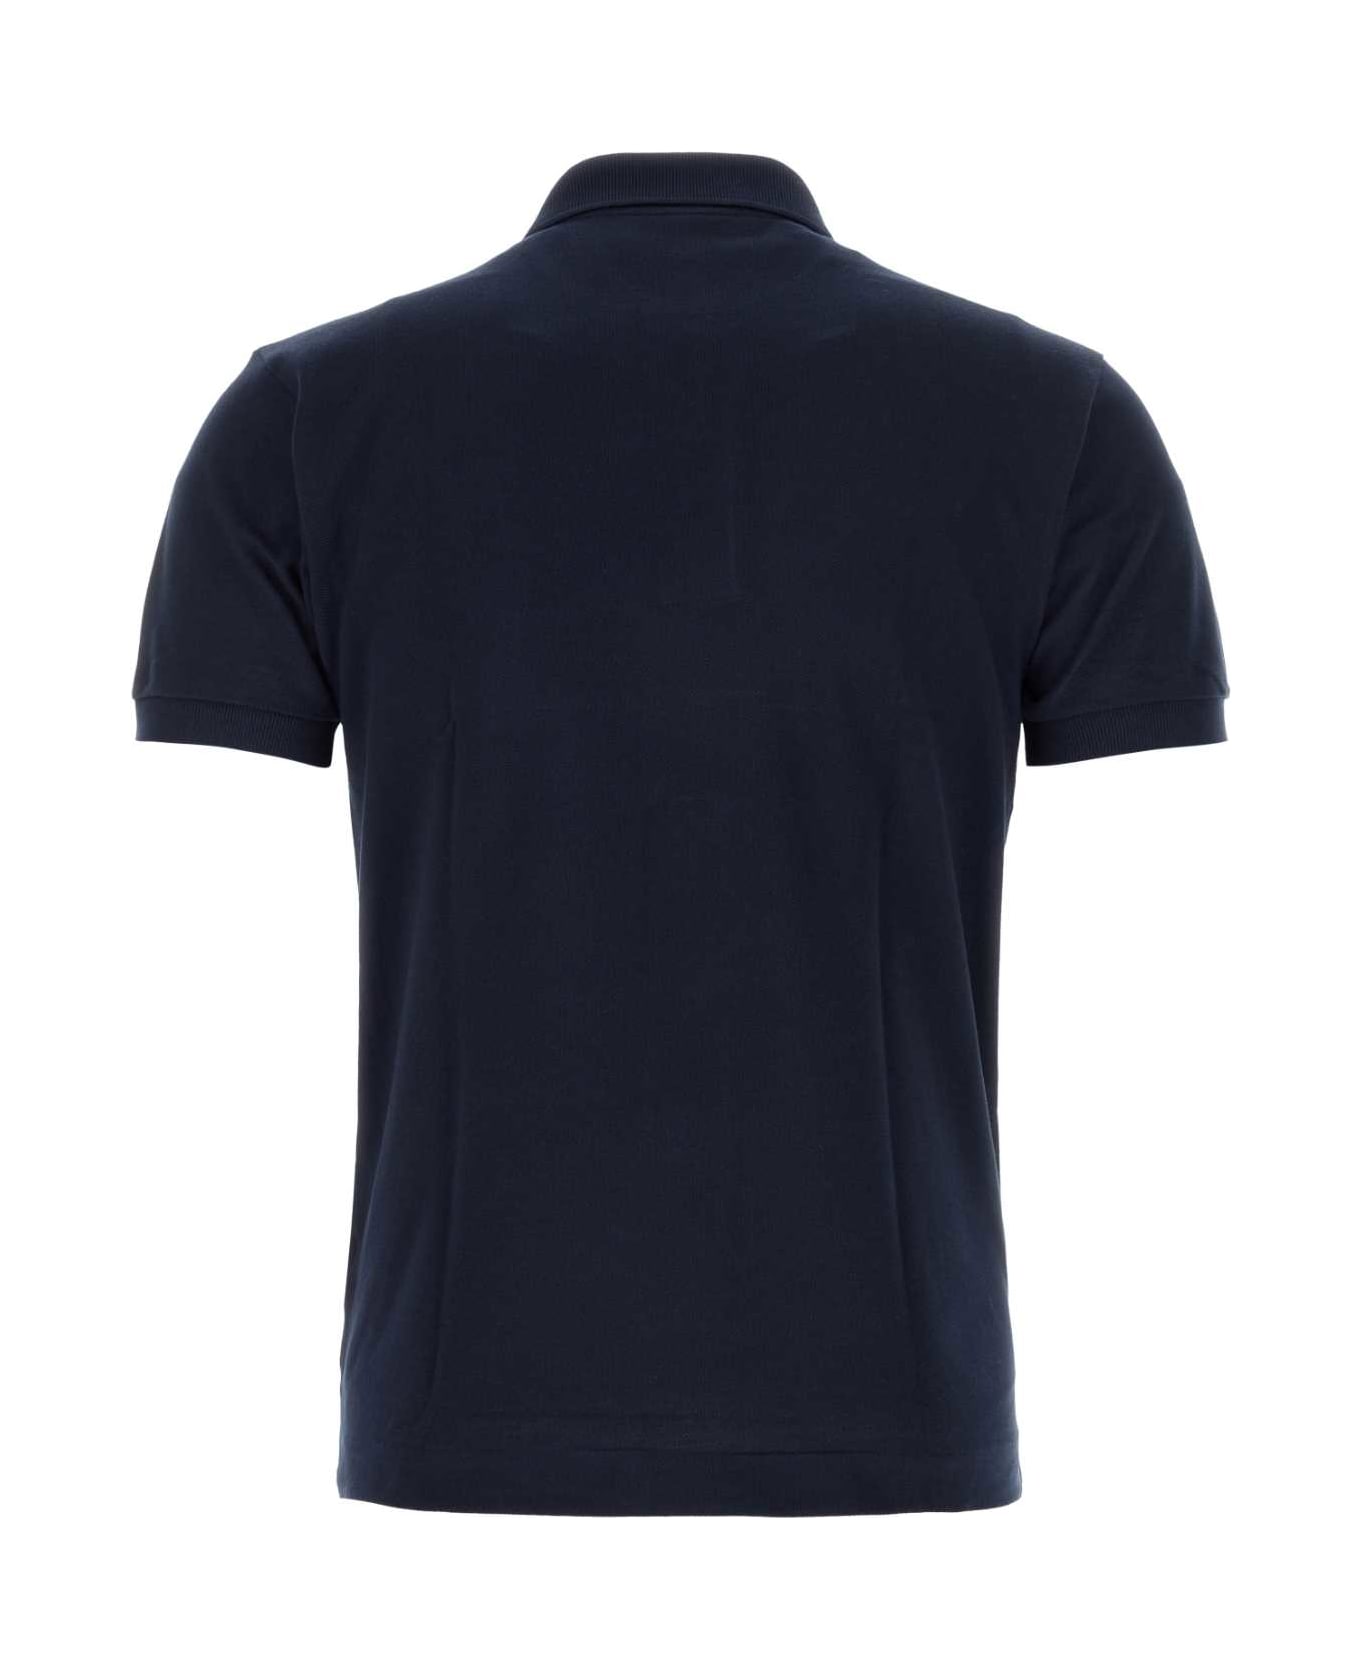 Lacoste Navy Blue Piquet Polo Shirt - 166